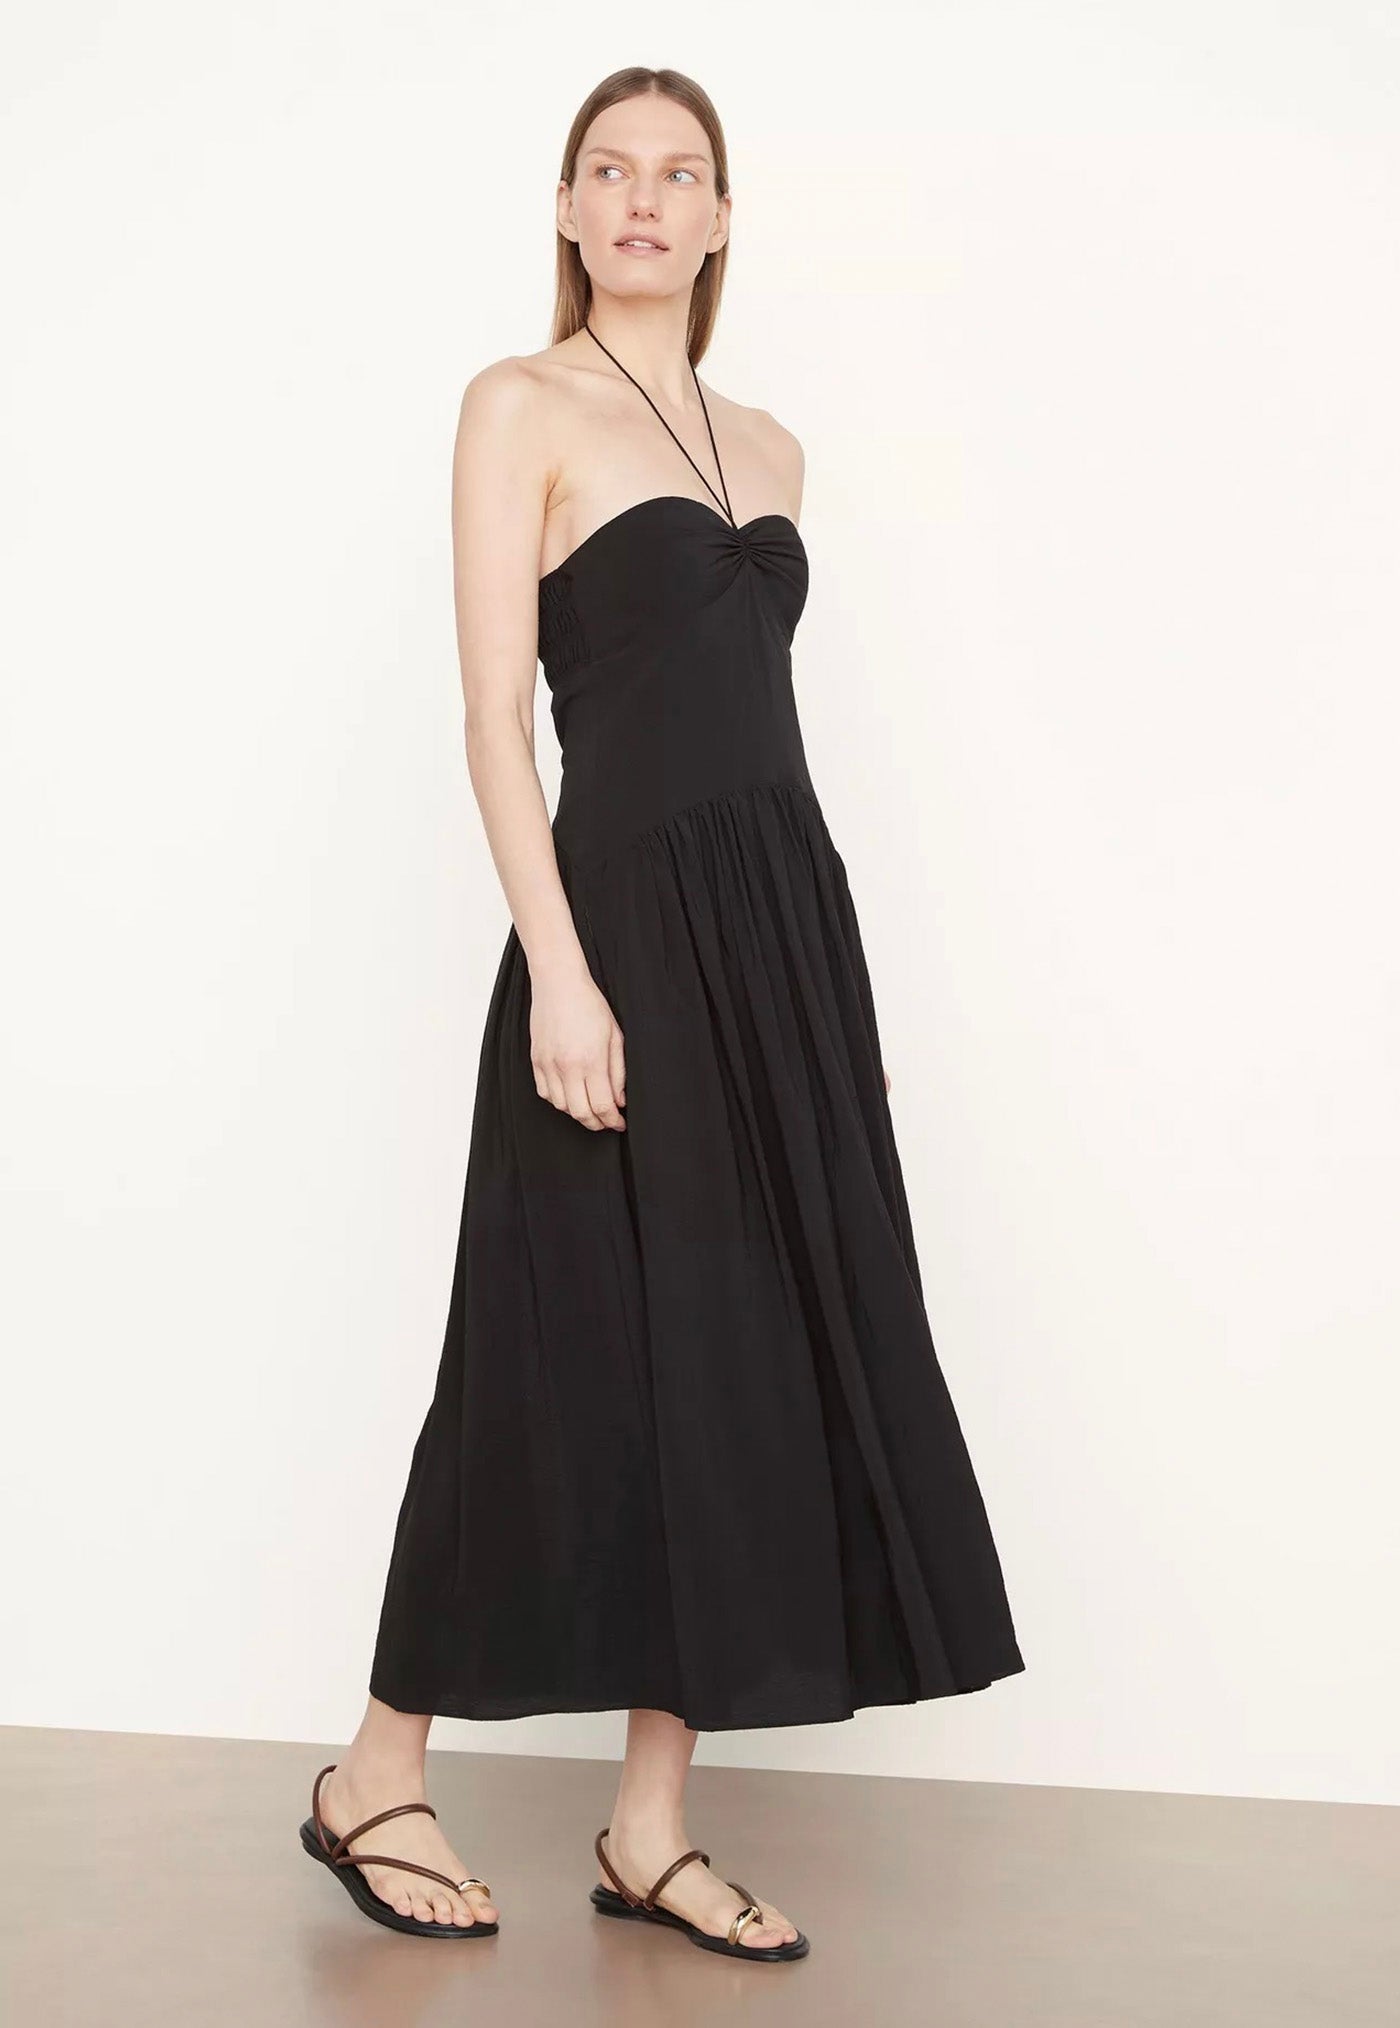 Ruched Halter Neck Dress - Black sold by Angel Divine